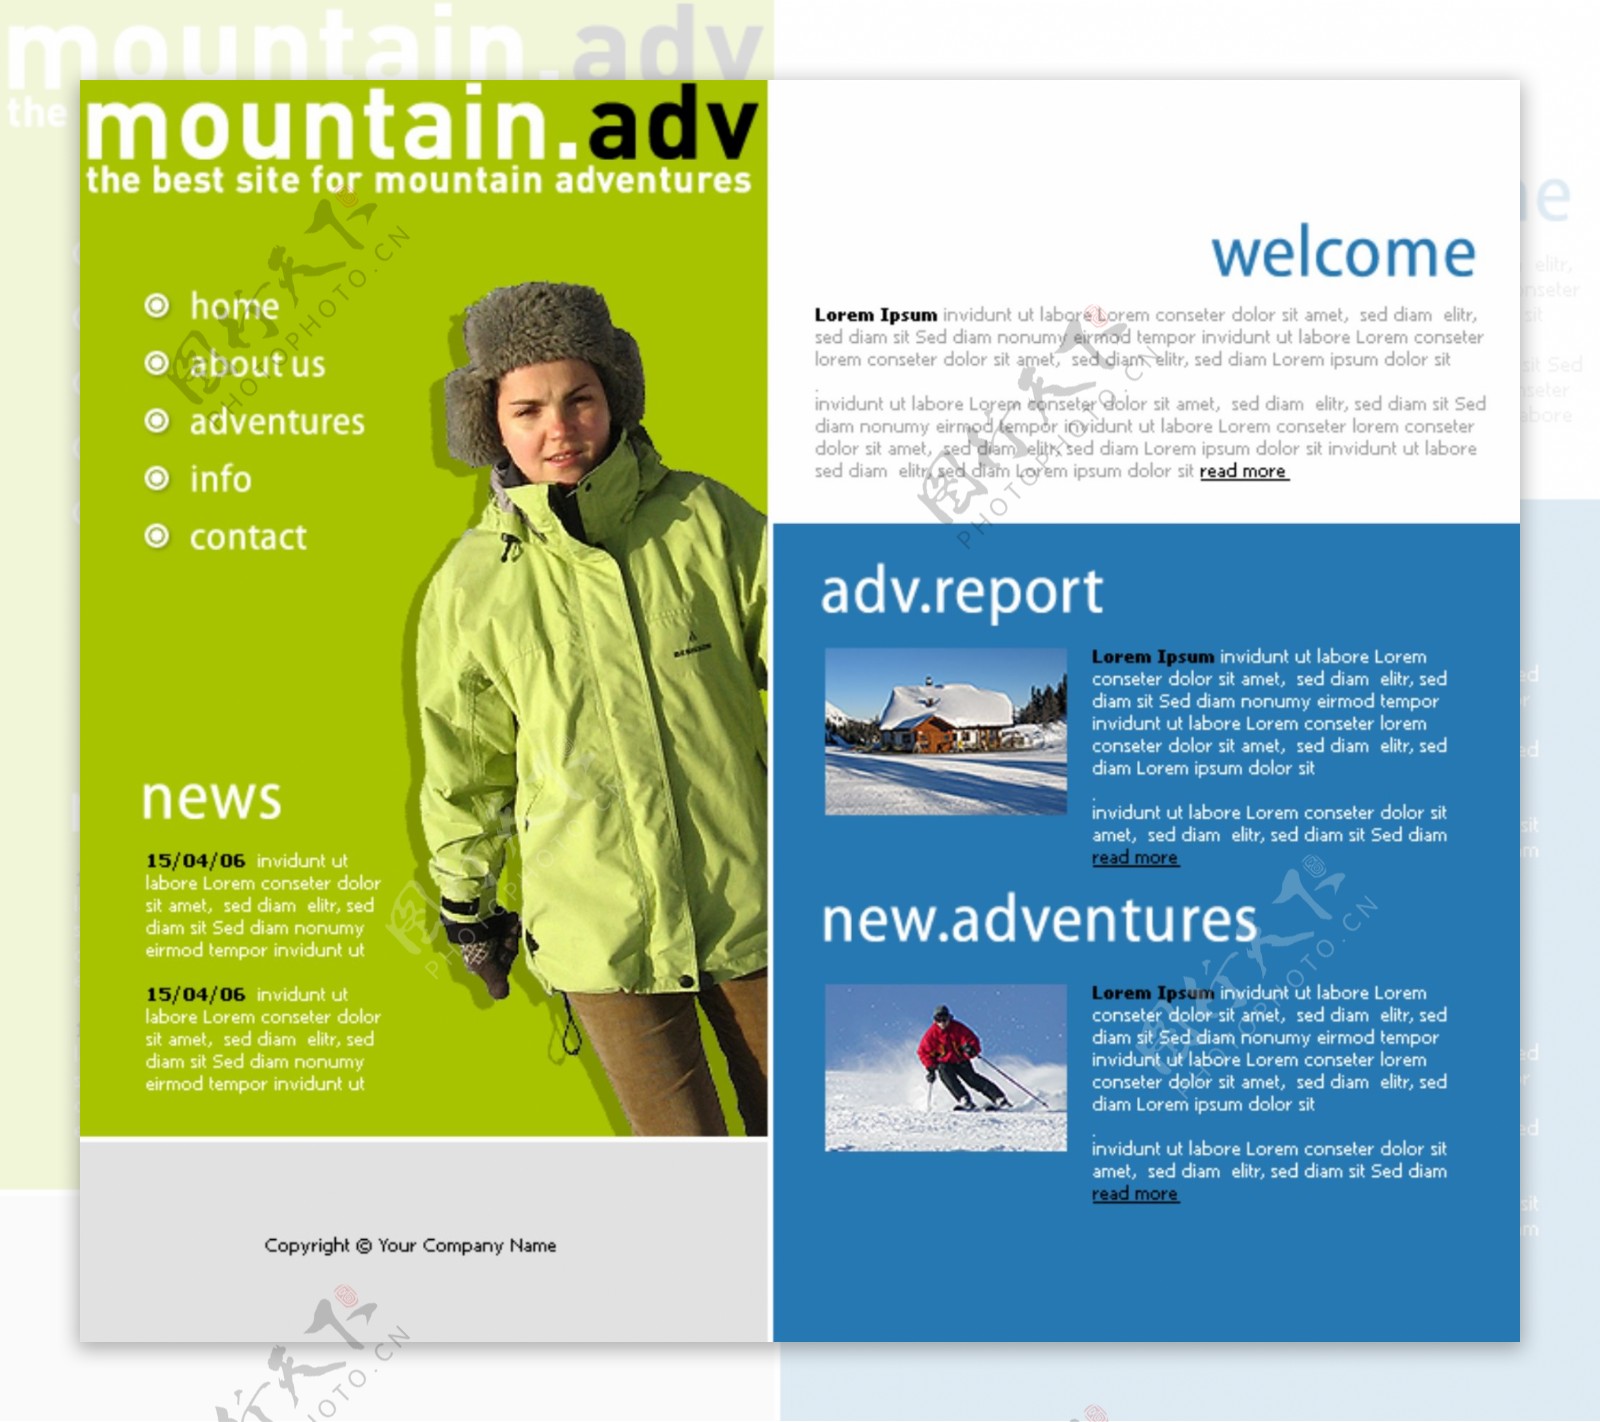 欧美滑雪运动爱好者网站模板